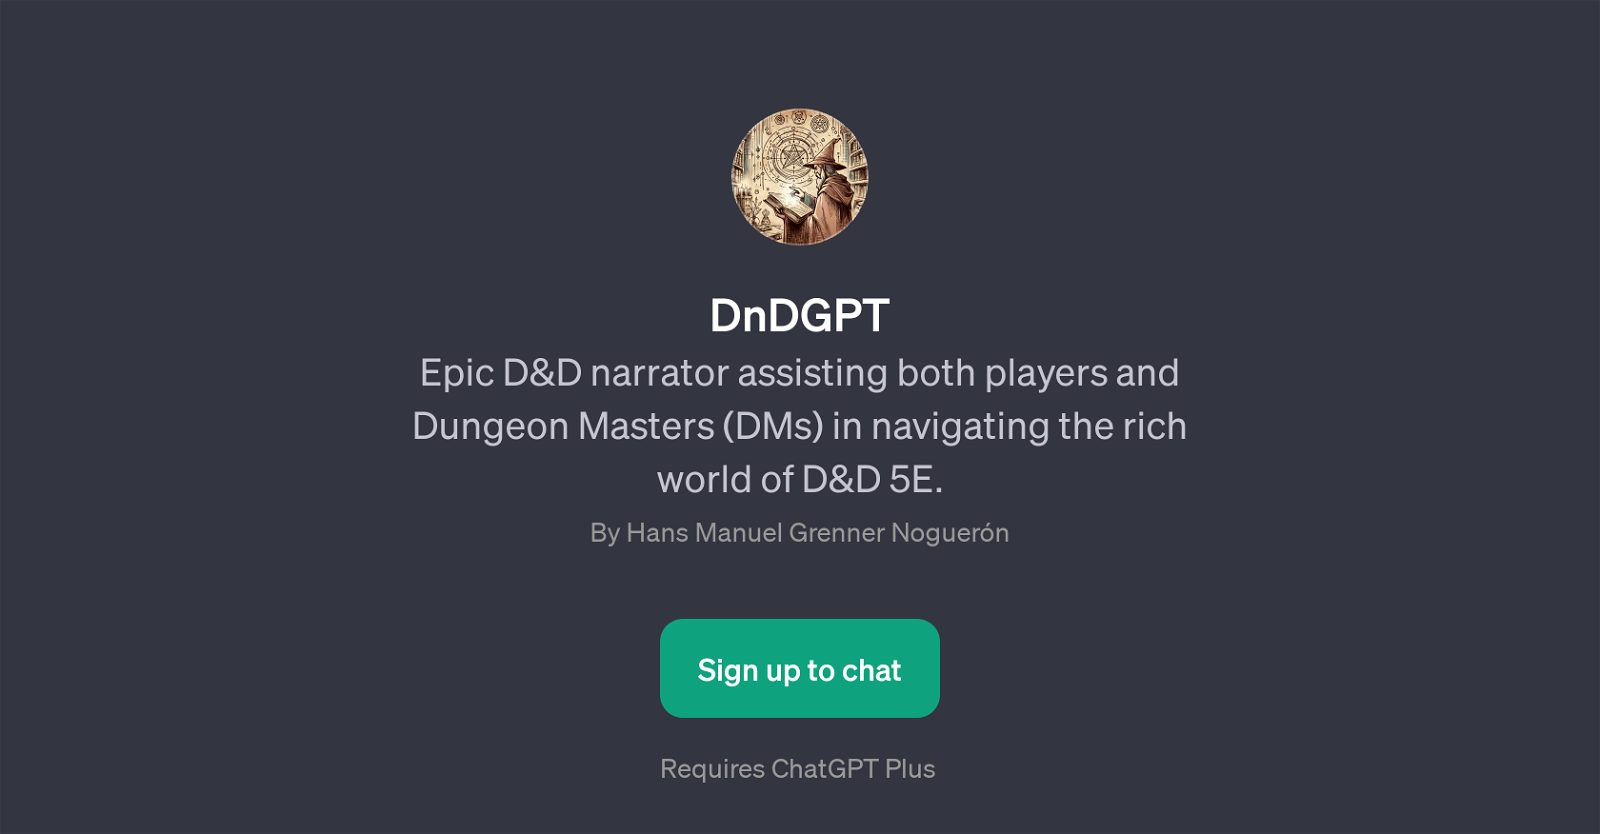 DnDGPT website